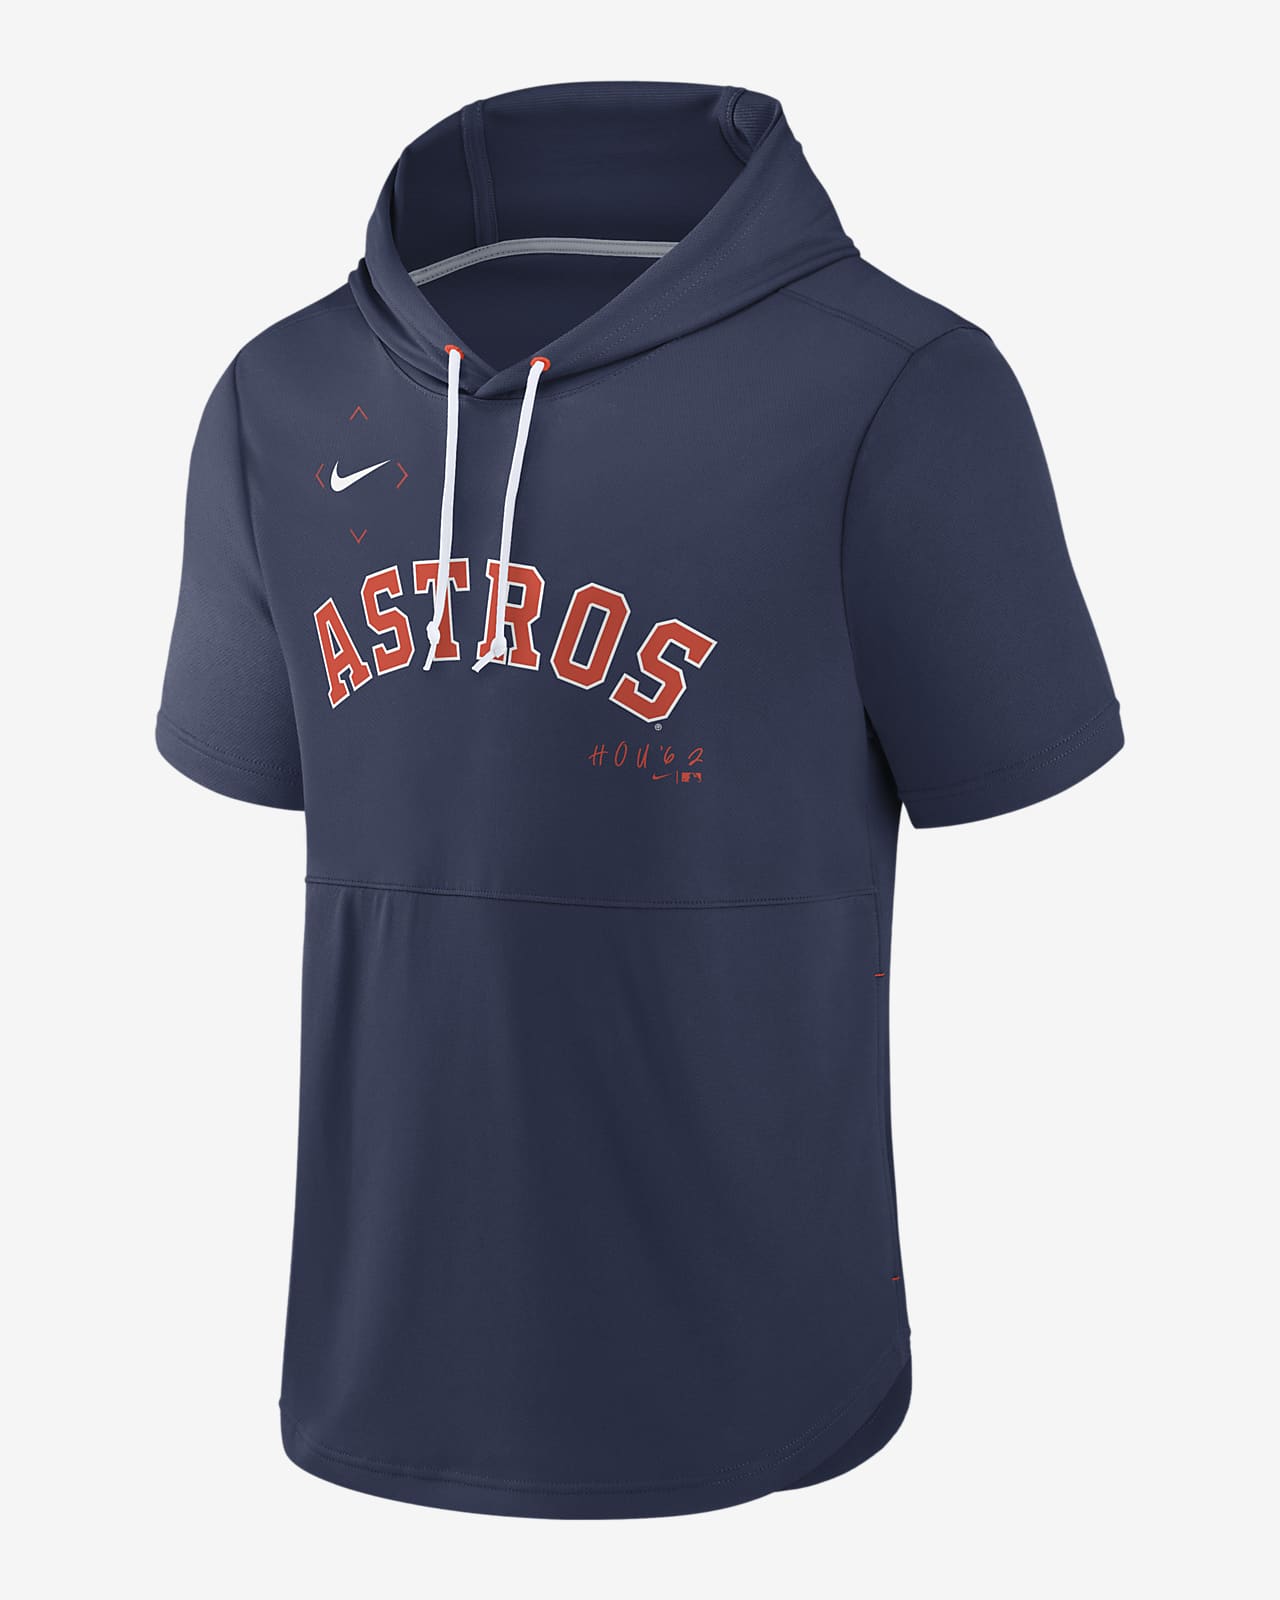 Nike Men's Houston Astros MLB Jerseys for sale